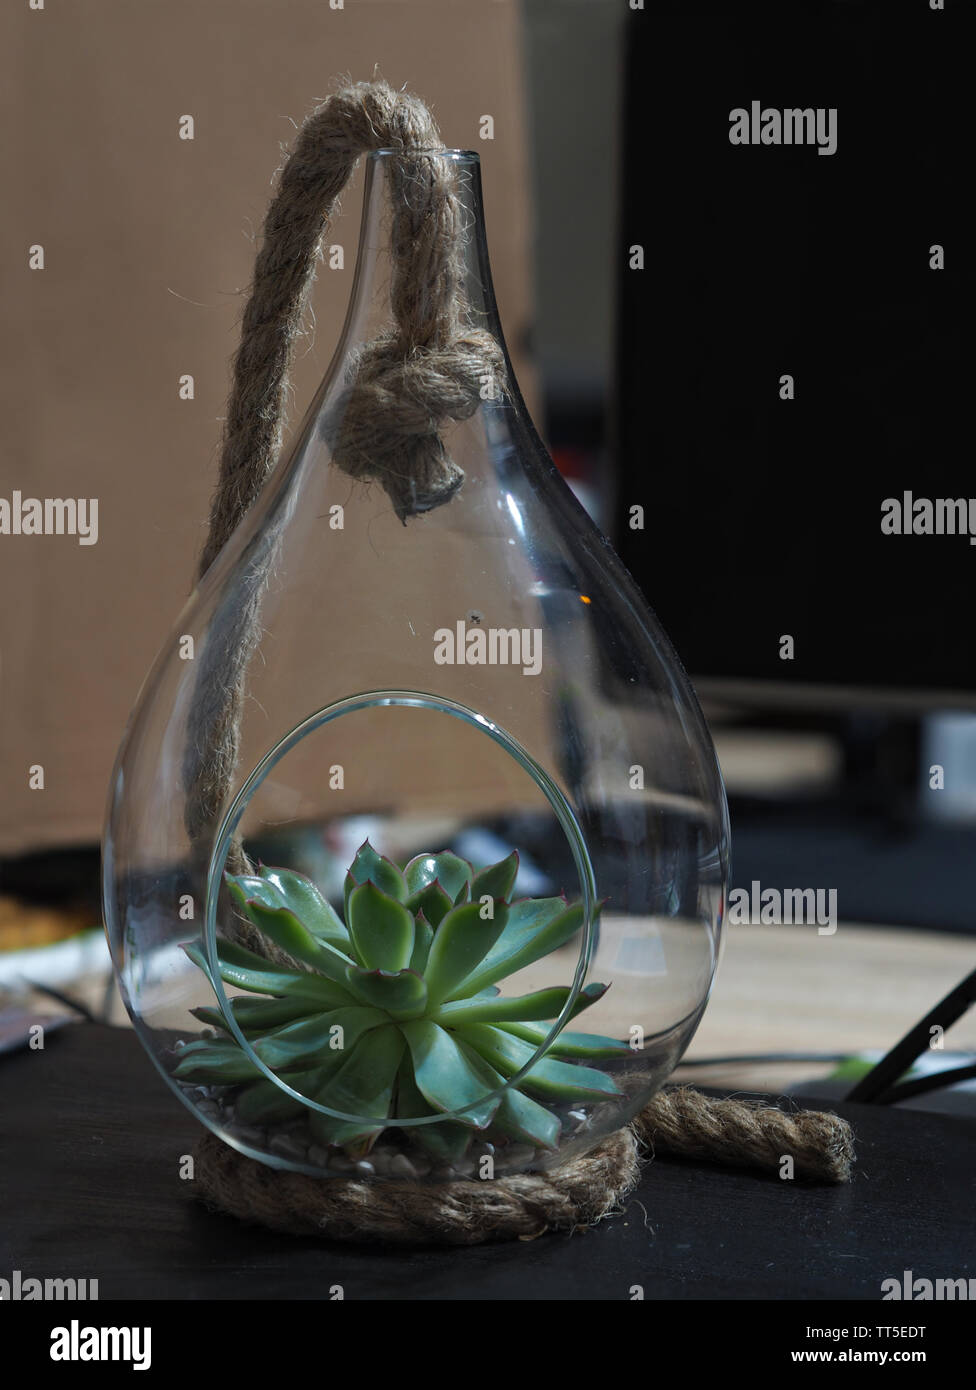 Echeveria pulidonis sukkulente Pflanze in ein Birnenförmiges Glas  Gewächshaus mit einer Schnur Dekoration Stockfotografie - Alamy